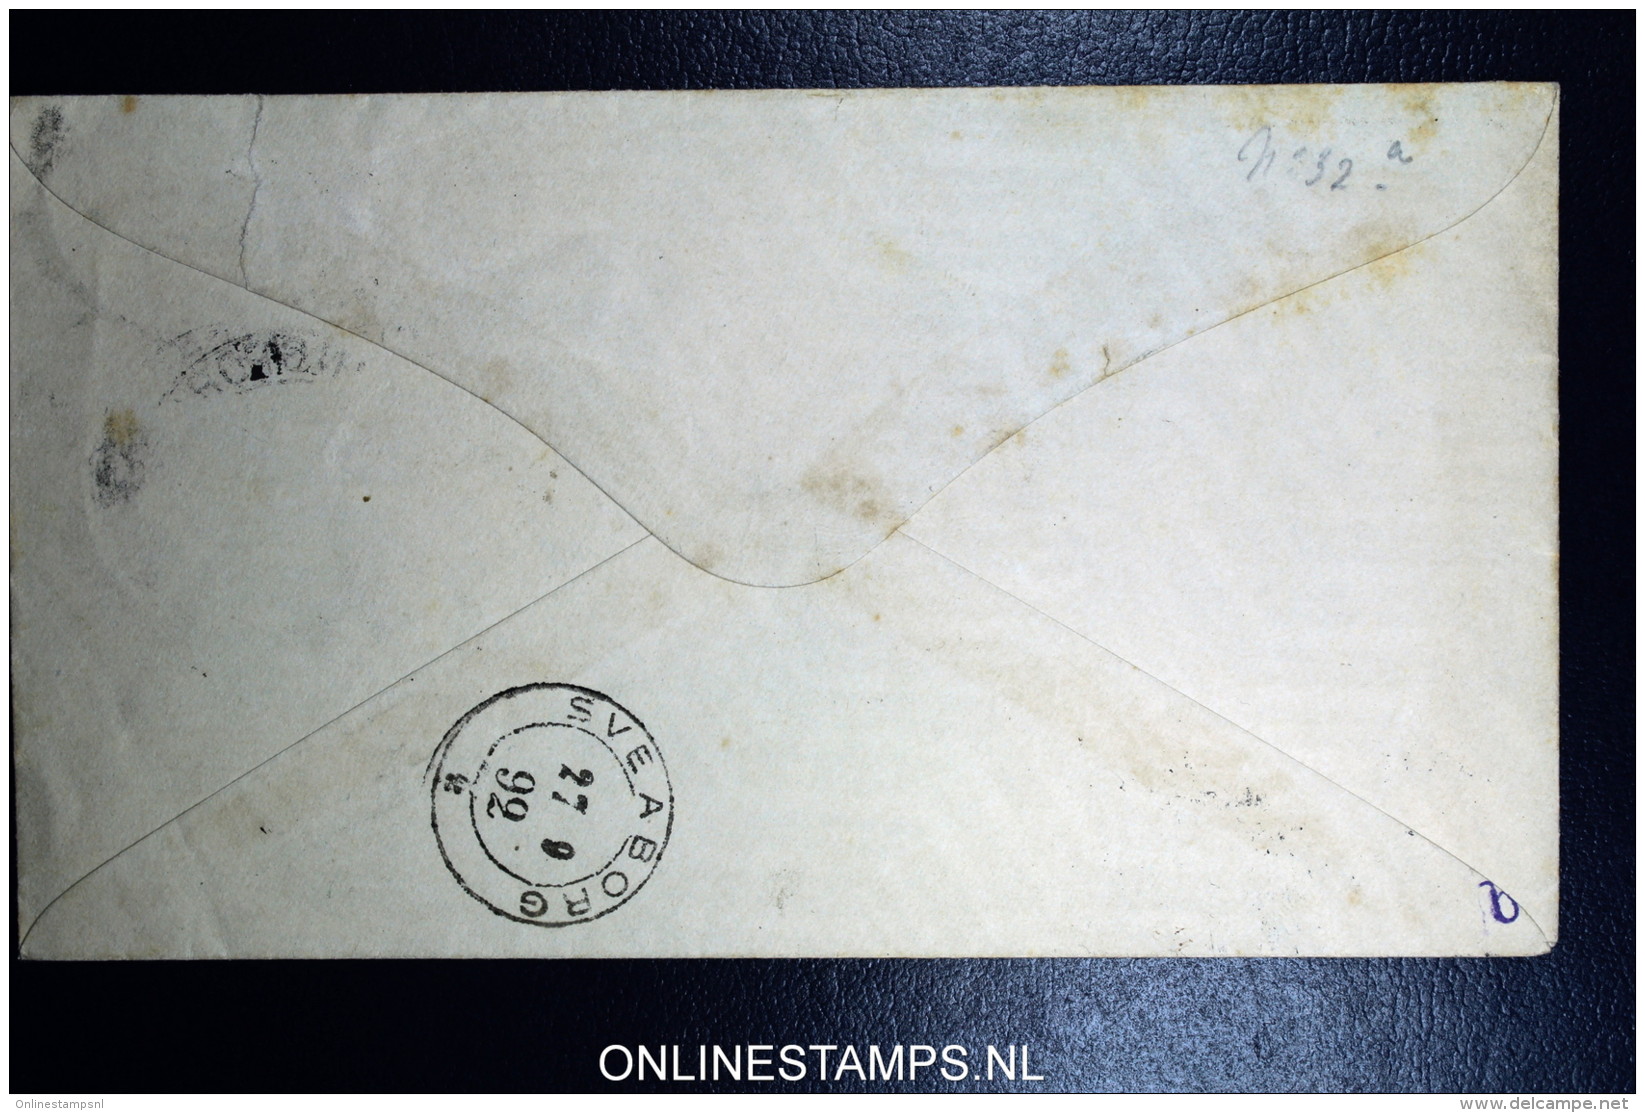 Finland Cover Mi Nr U 39 A 1891 Used - Enteros Postales